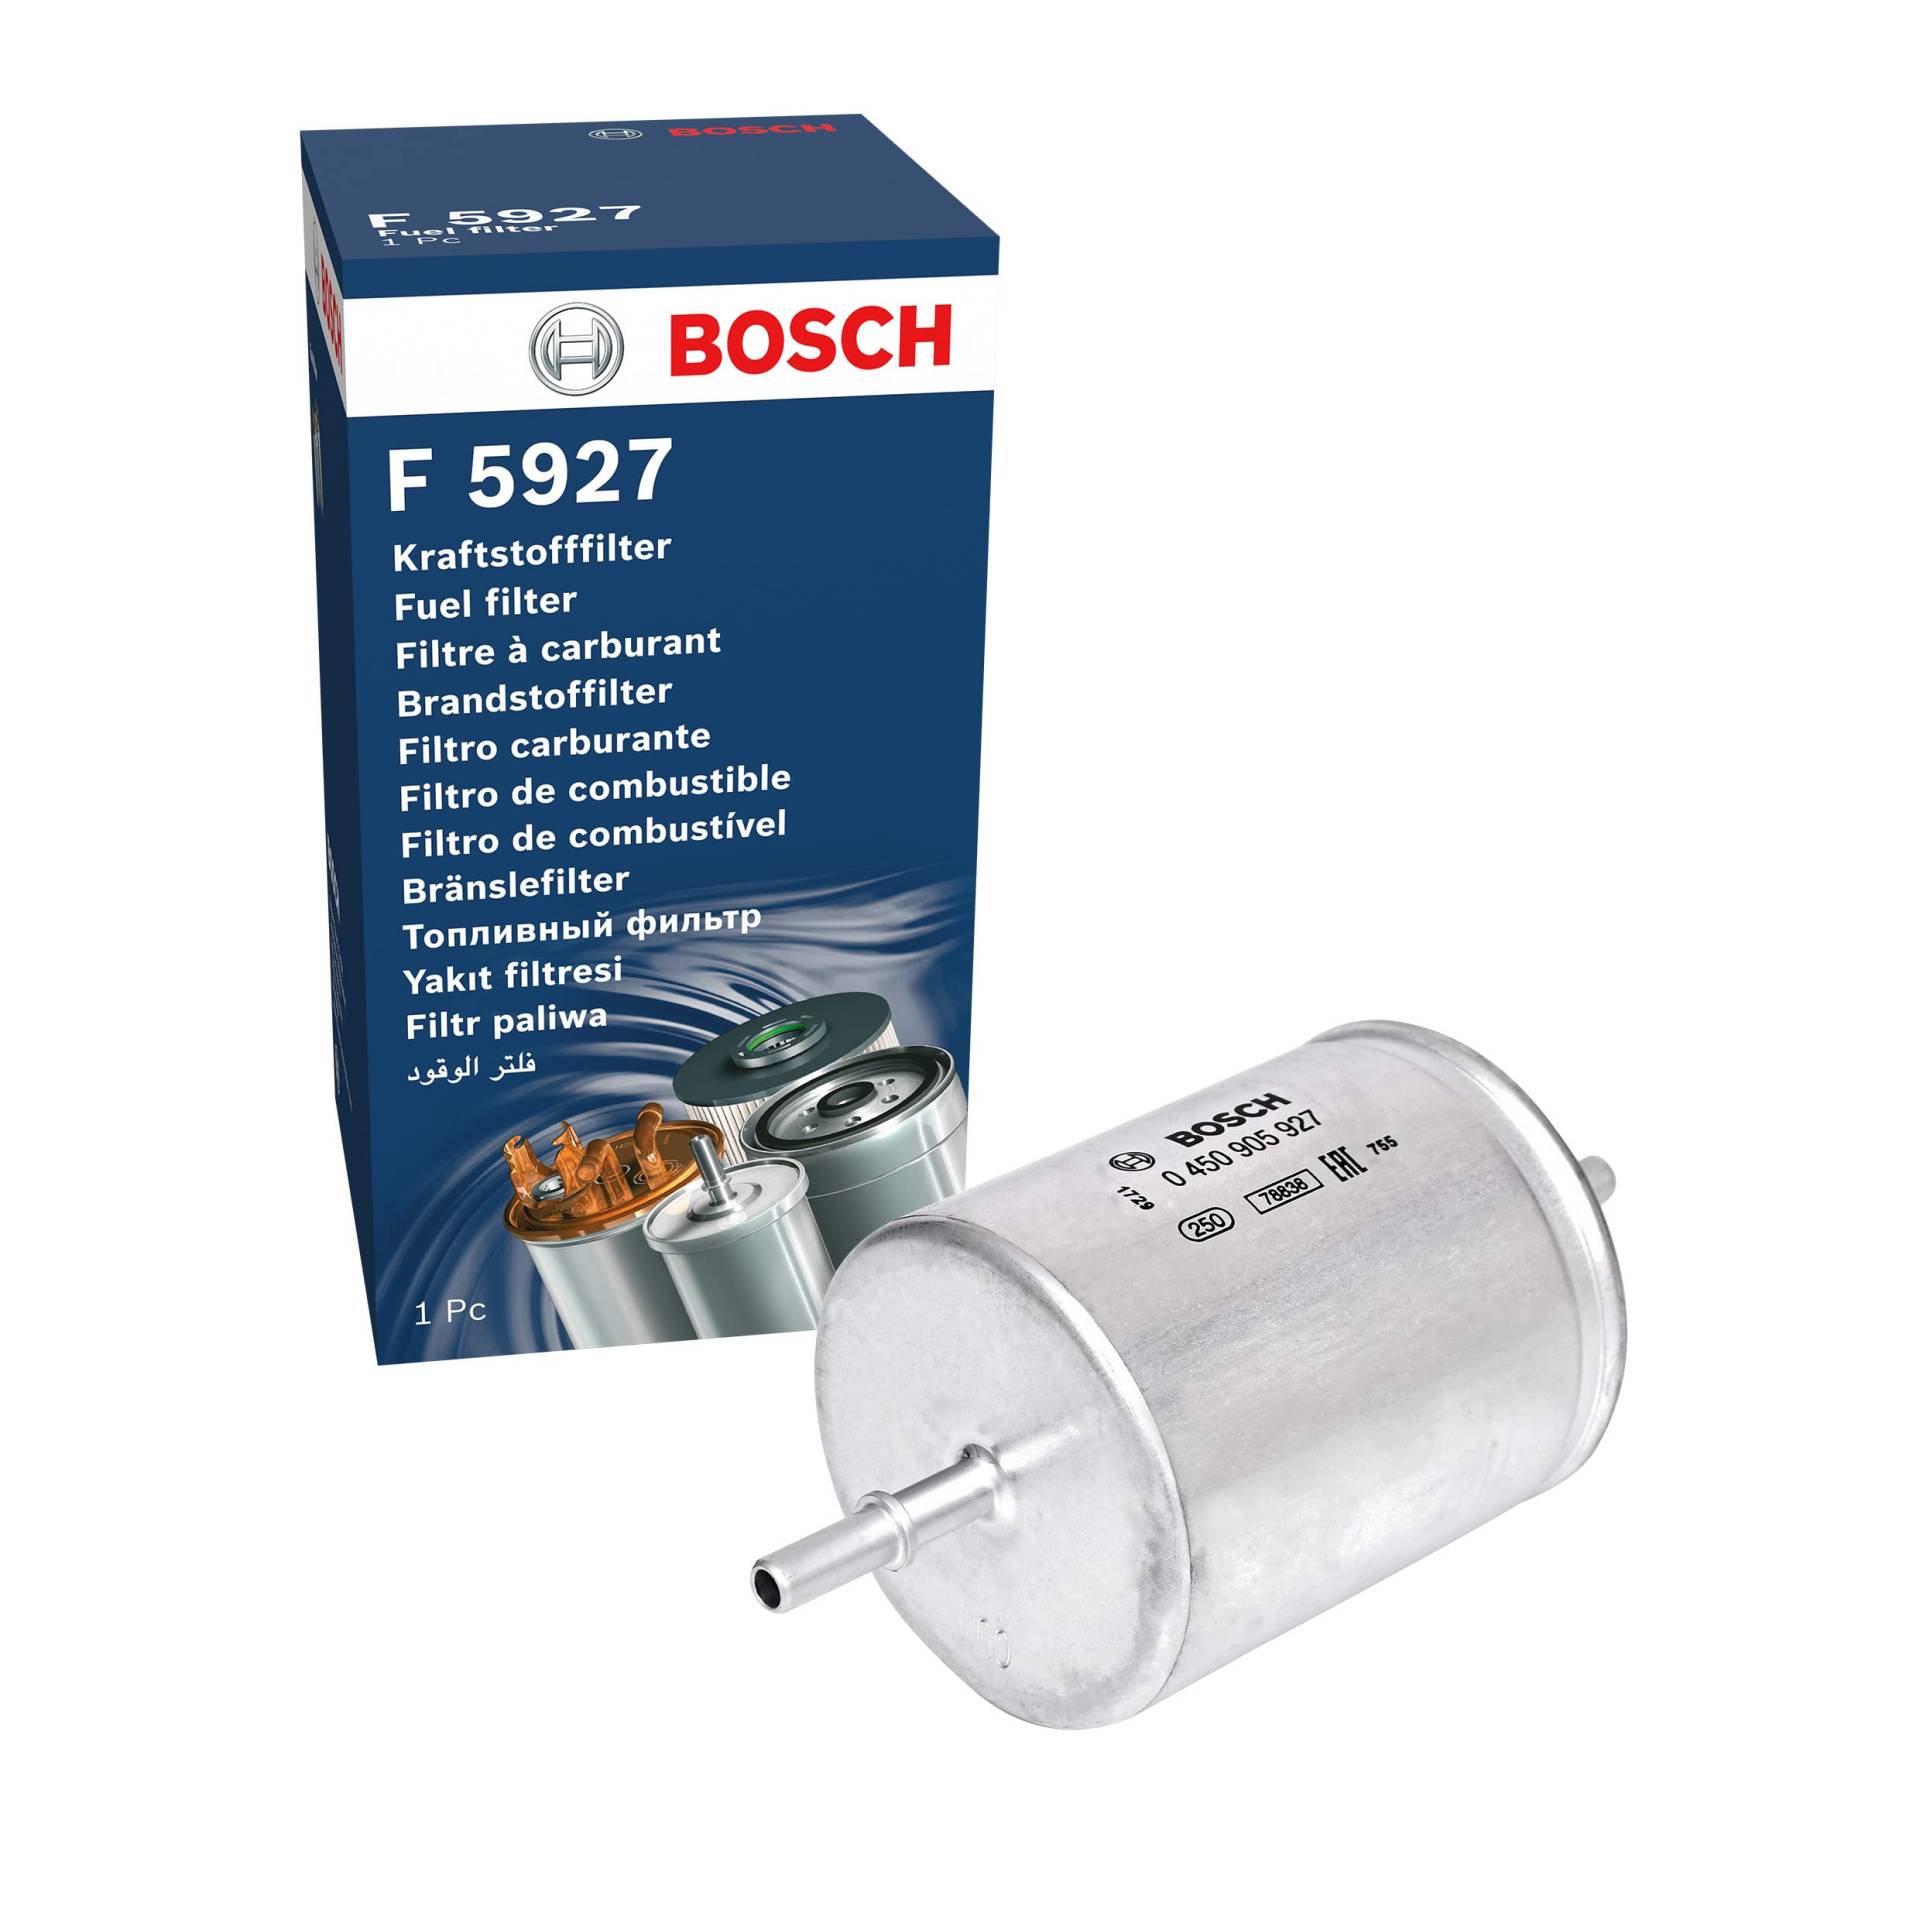 Bosch F5927 - Benzinfilter Auto von Bosch Automotive